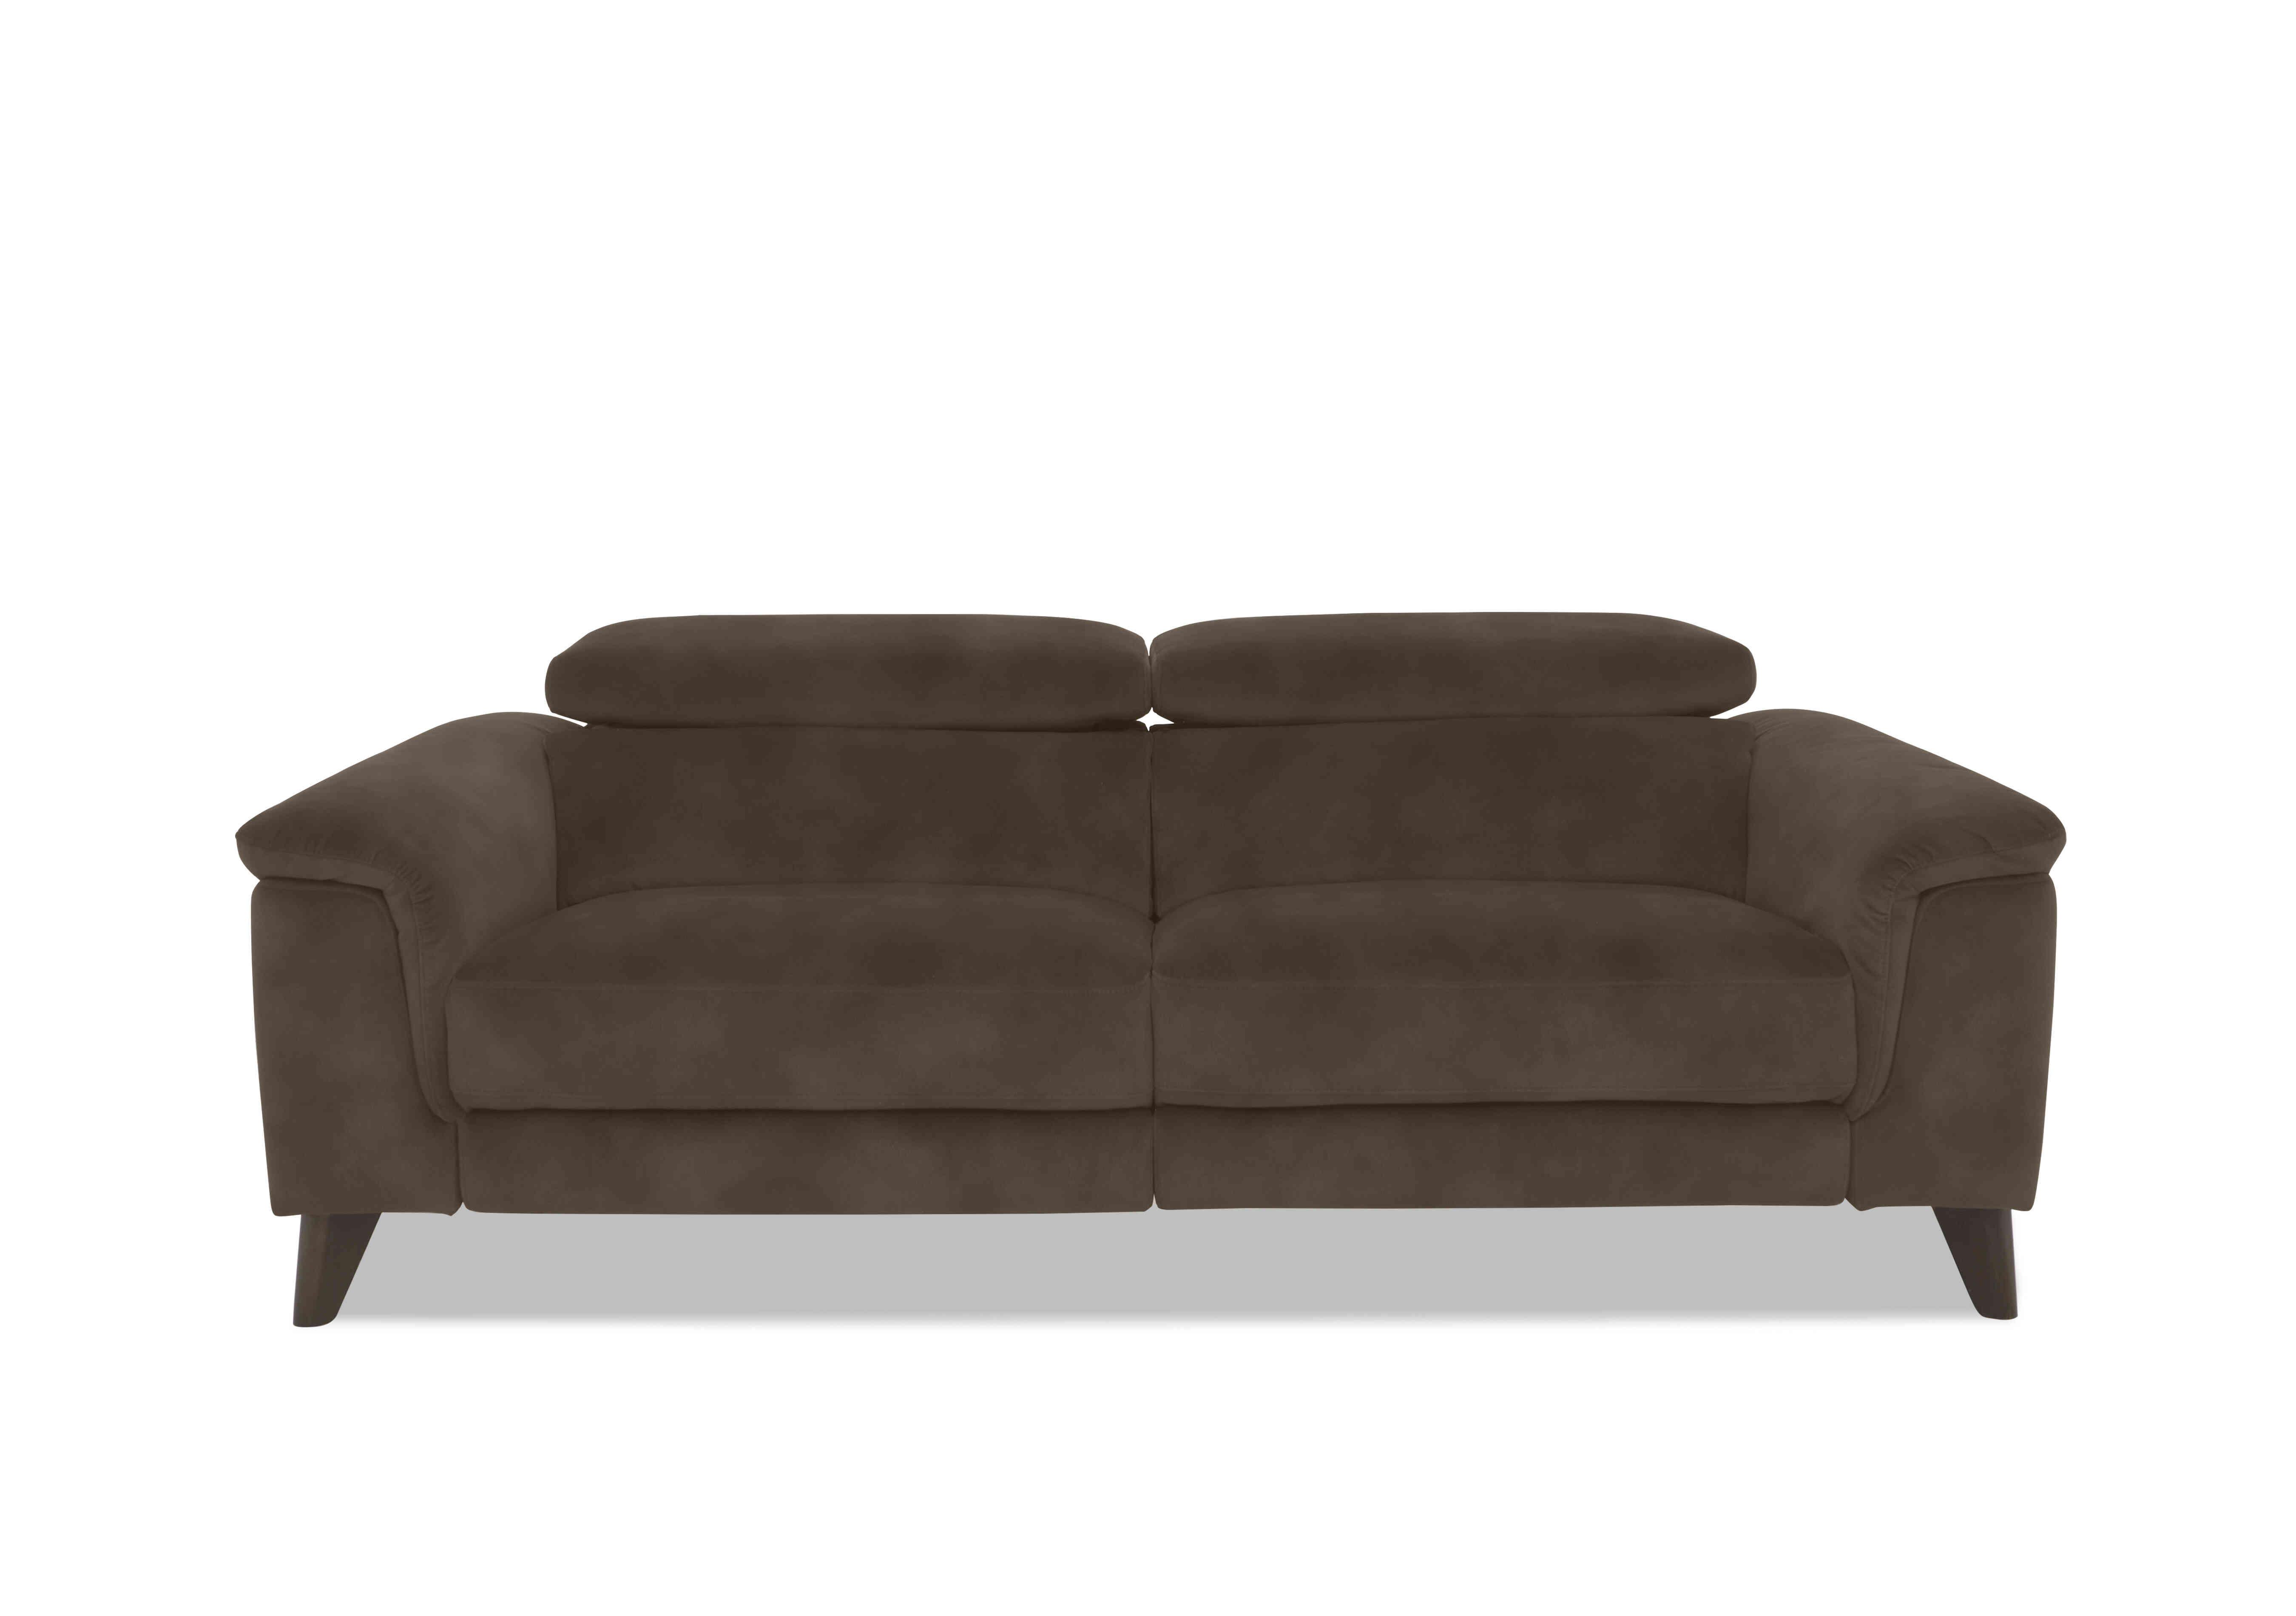 Wade 3 Seater Fabric Sofa in Sfa-Pey-R04 Dark Chocolate on Furniture Village